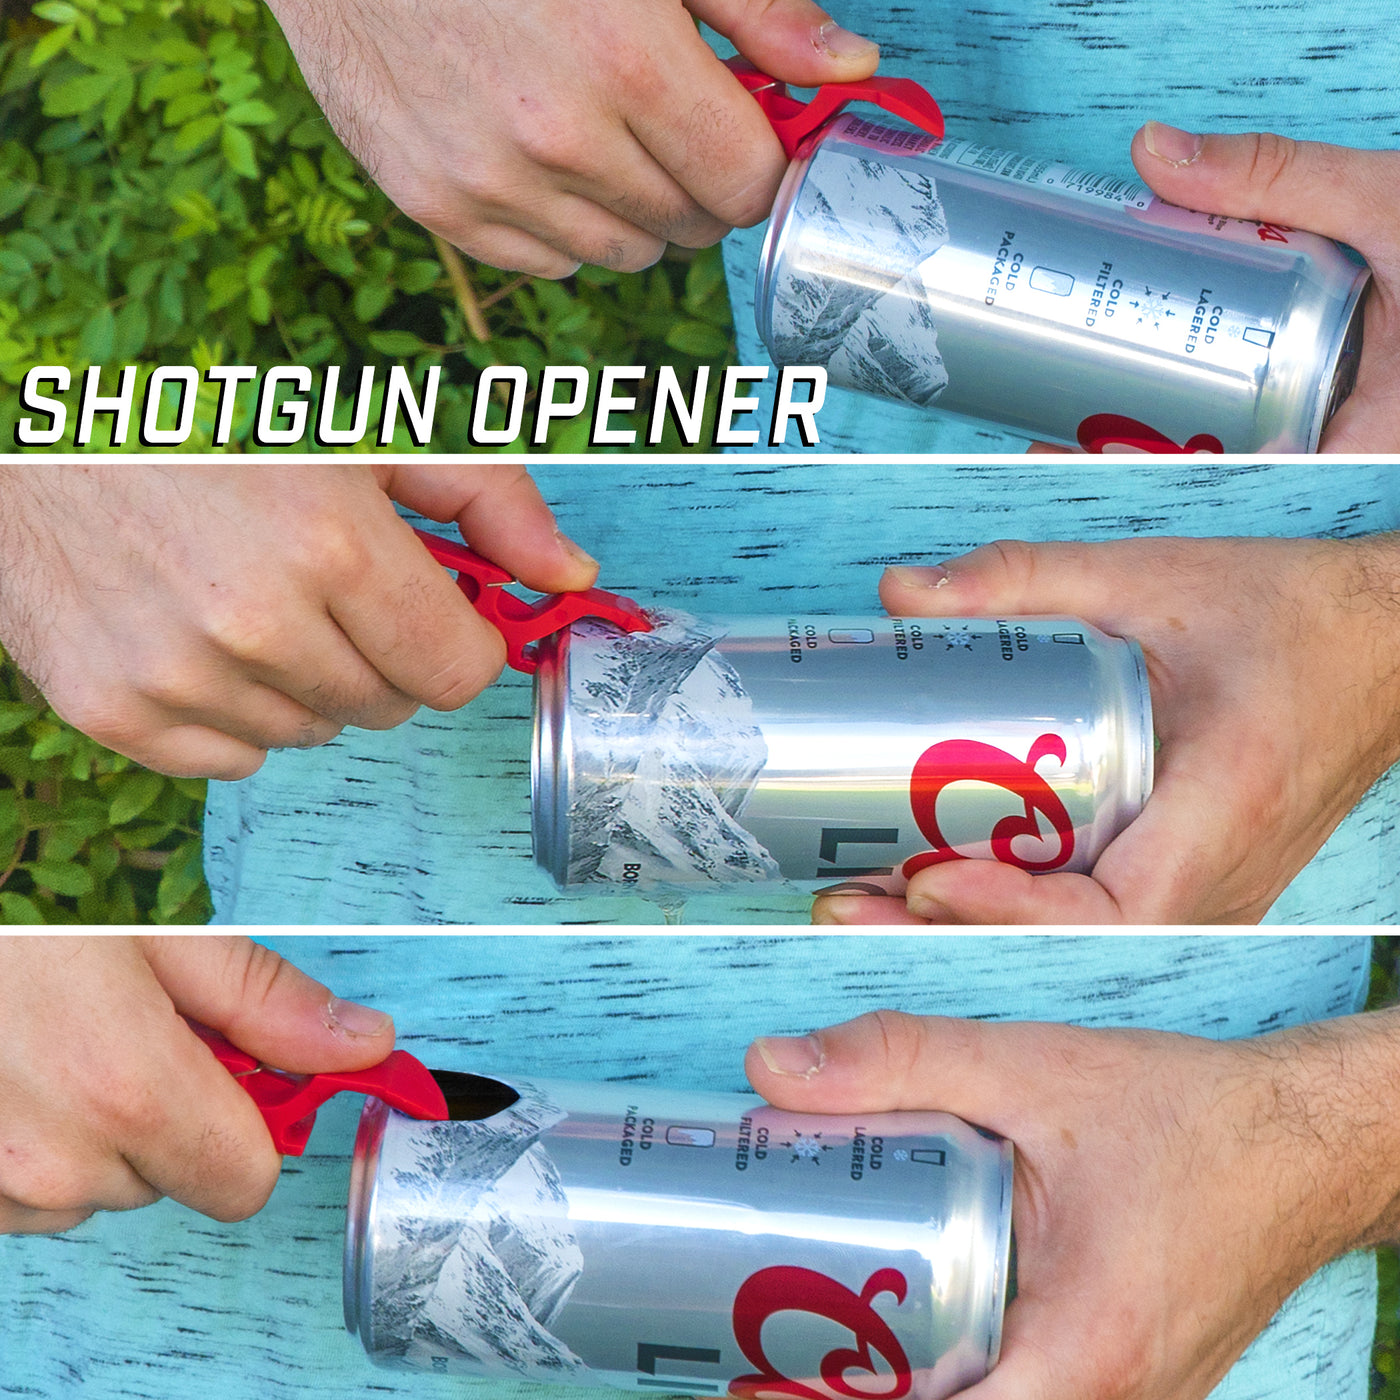  Beer Shotgun Tool - 4-Can Shotgun Drinking Tool for